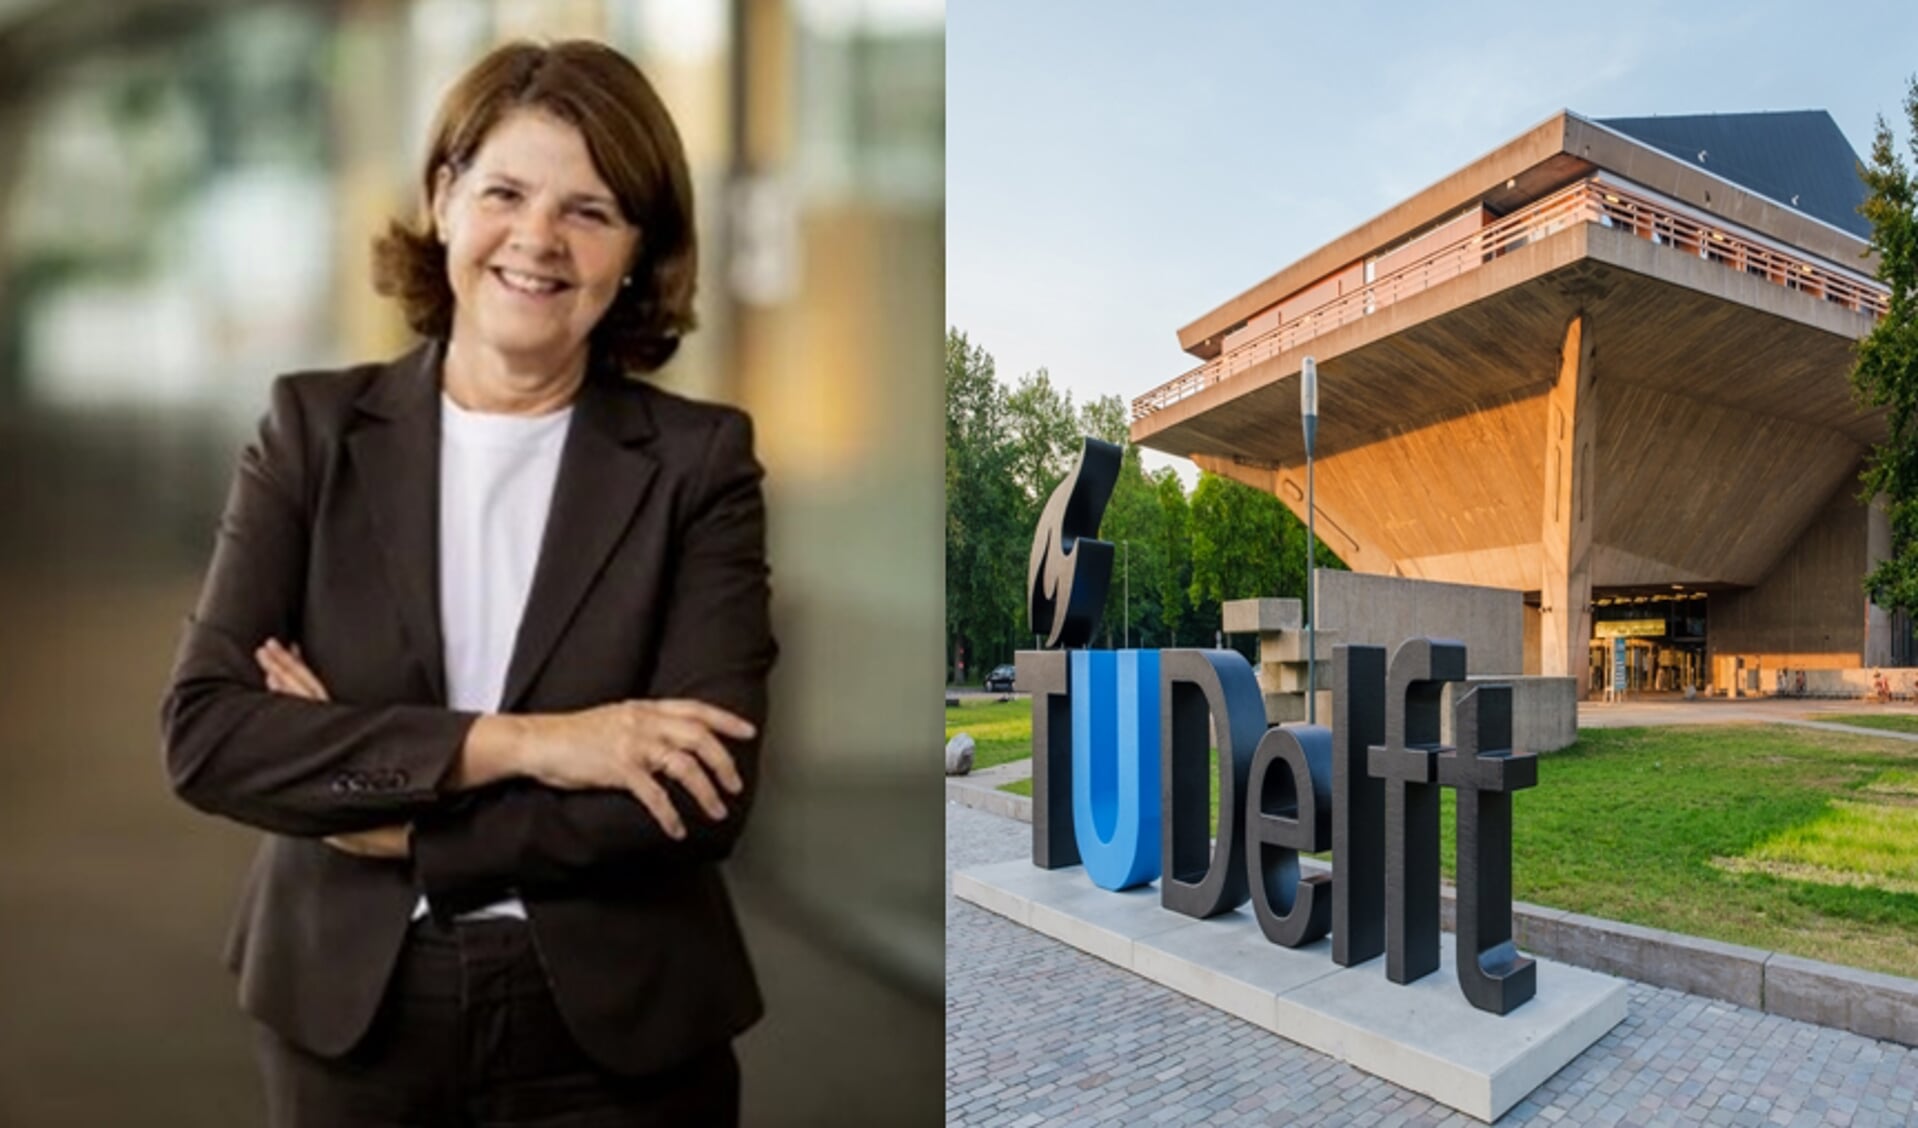 Op maandag 26 juni zullen burgemeester Marja van Bijsterveldt en rector-magnificus en collegevoorzitter Tim van der Hagen van de TU Delft het hebben over hun visie op de verbinding tussen de TU en de stad Delft. 